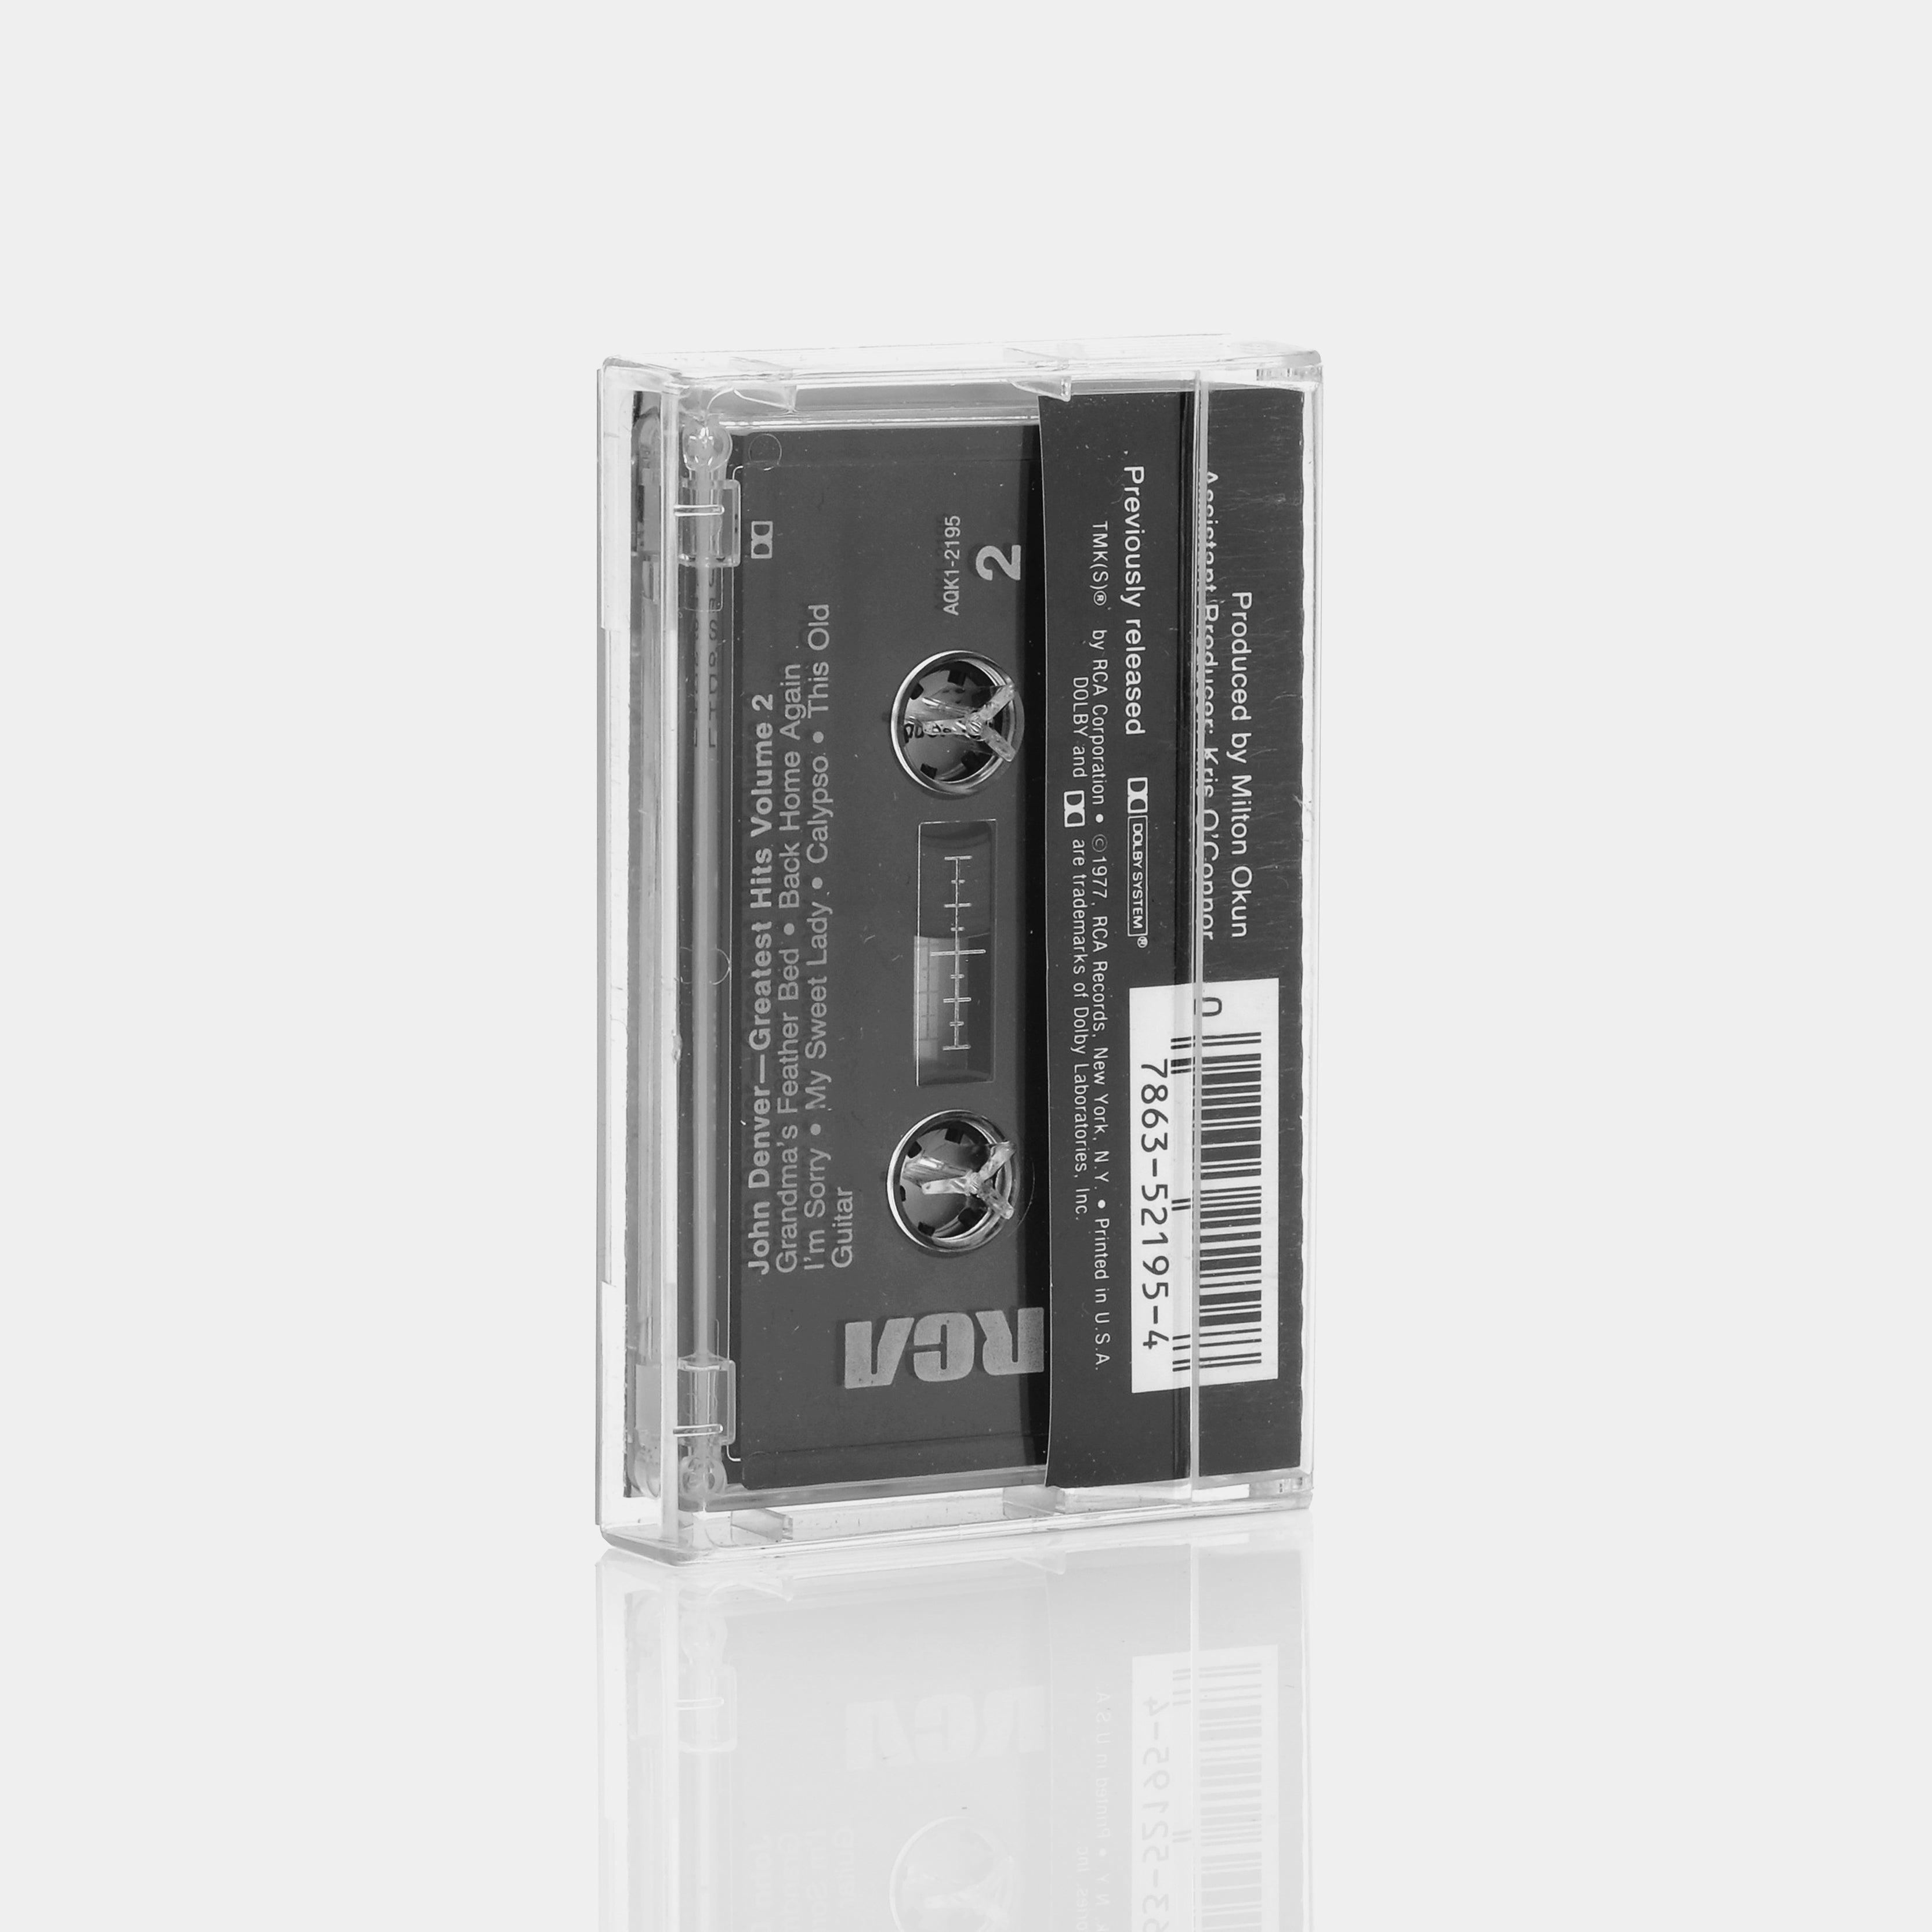 John Denver - Greatest Hits, Volume 2 Cassette Tape